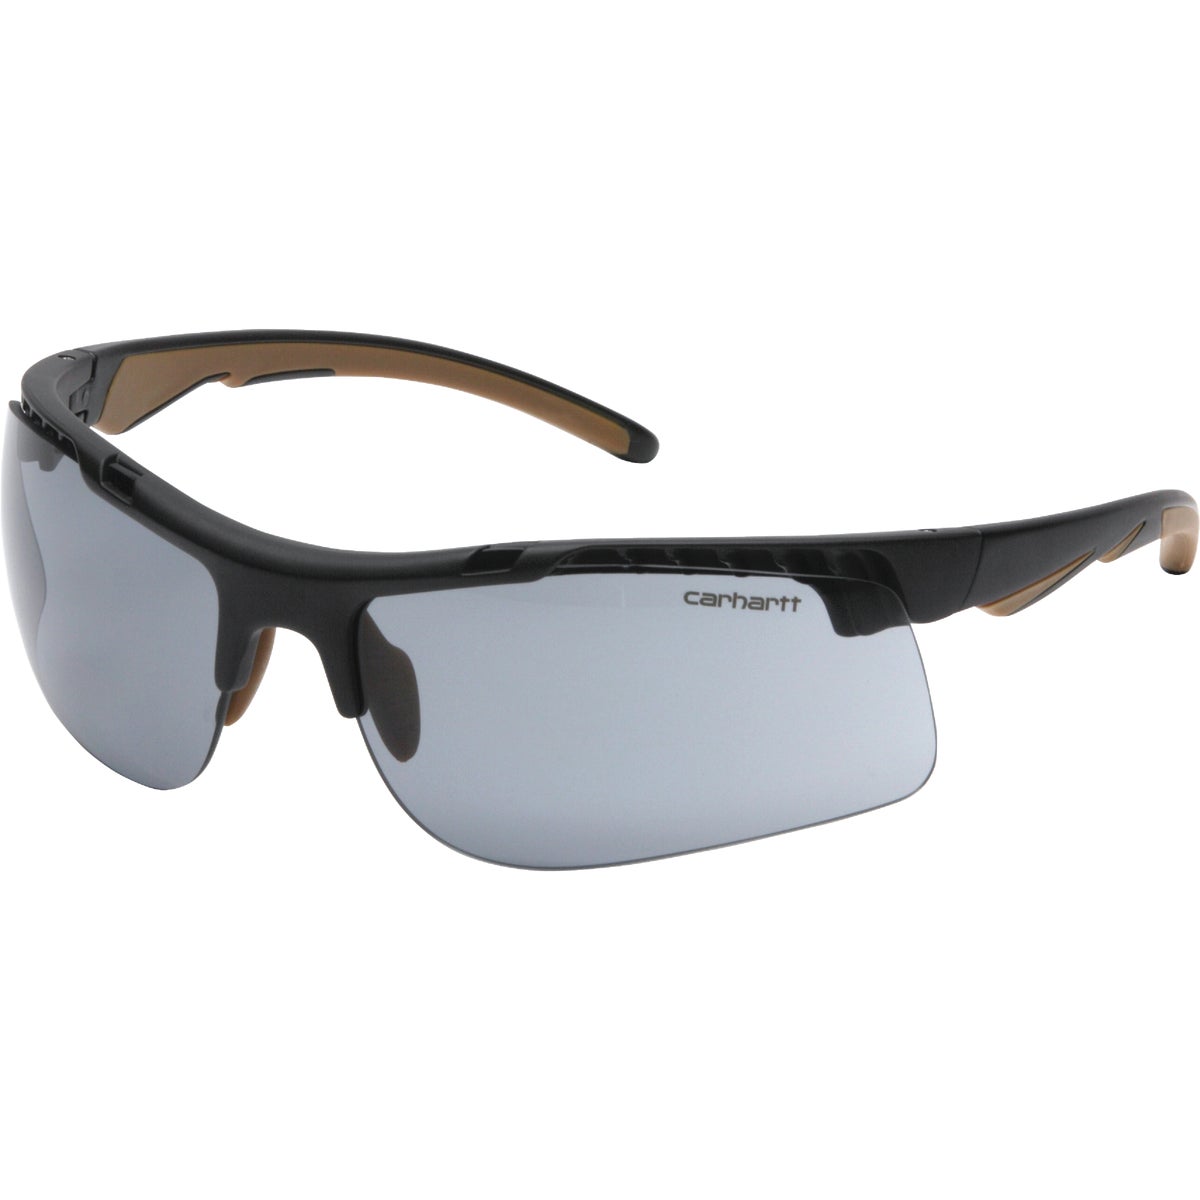 Carhartt Rockwood Black Frame Safety Glasses with Gray Anti-Fog Lenses